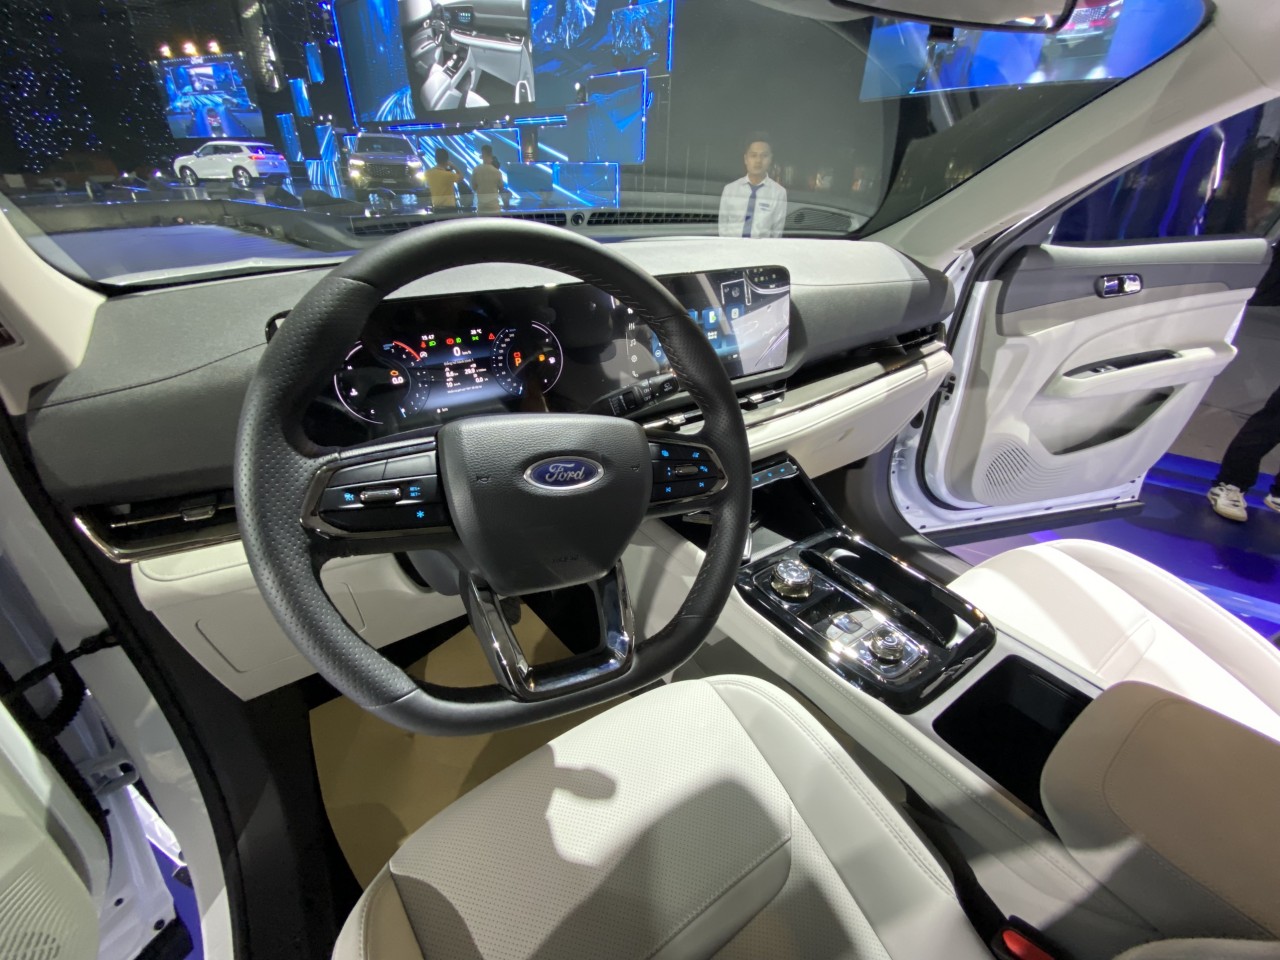 Ford Territory ra mắt: 3 phiên bản, giá bán 822-935 triệu đồng